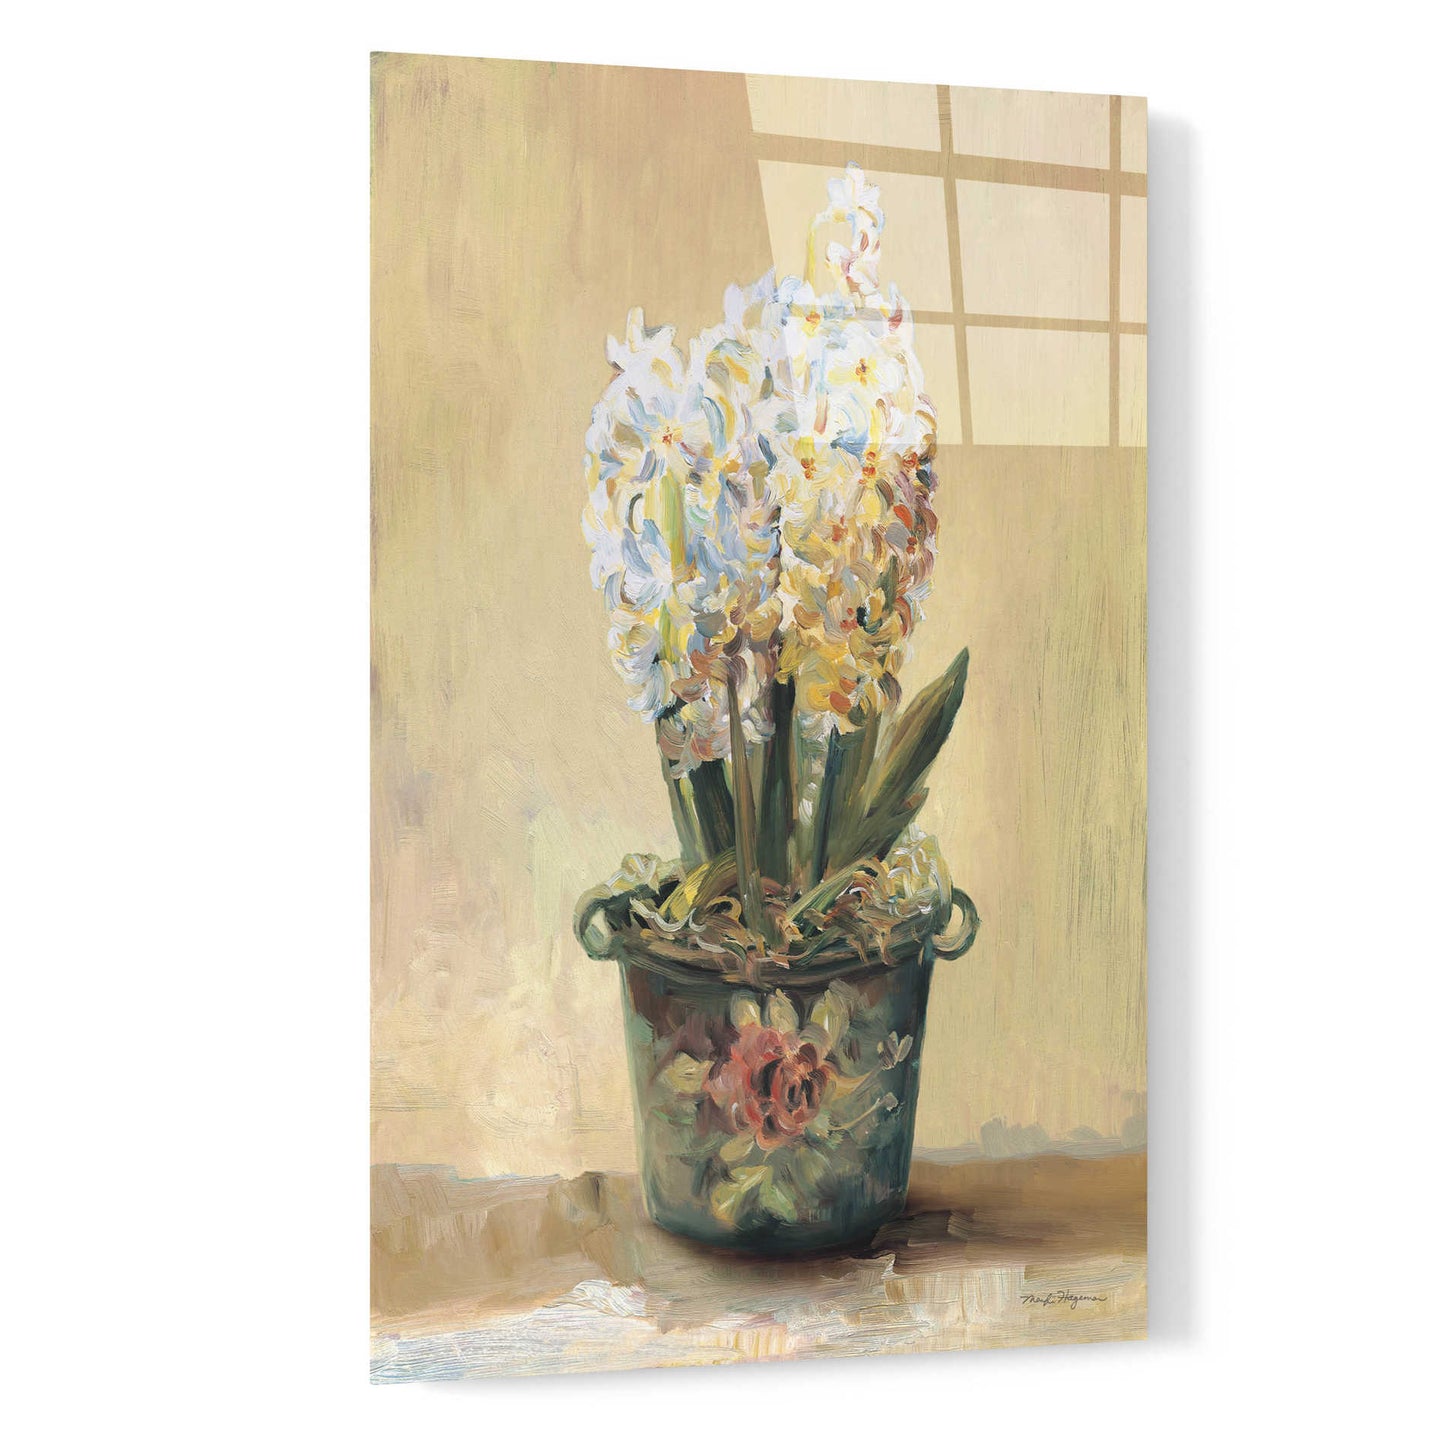 Epic Art 'Potted Hyacinths' by Marilyn Hageman, Acrylic Glass Wall Art,16x24